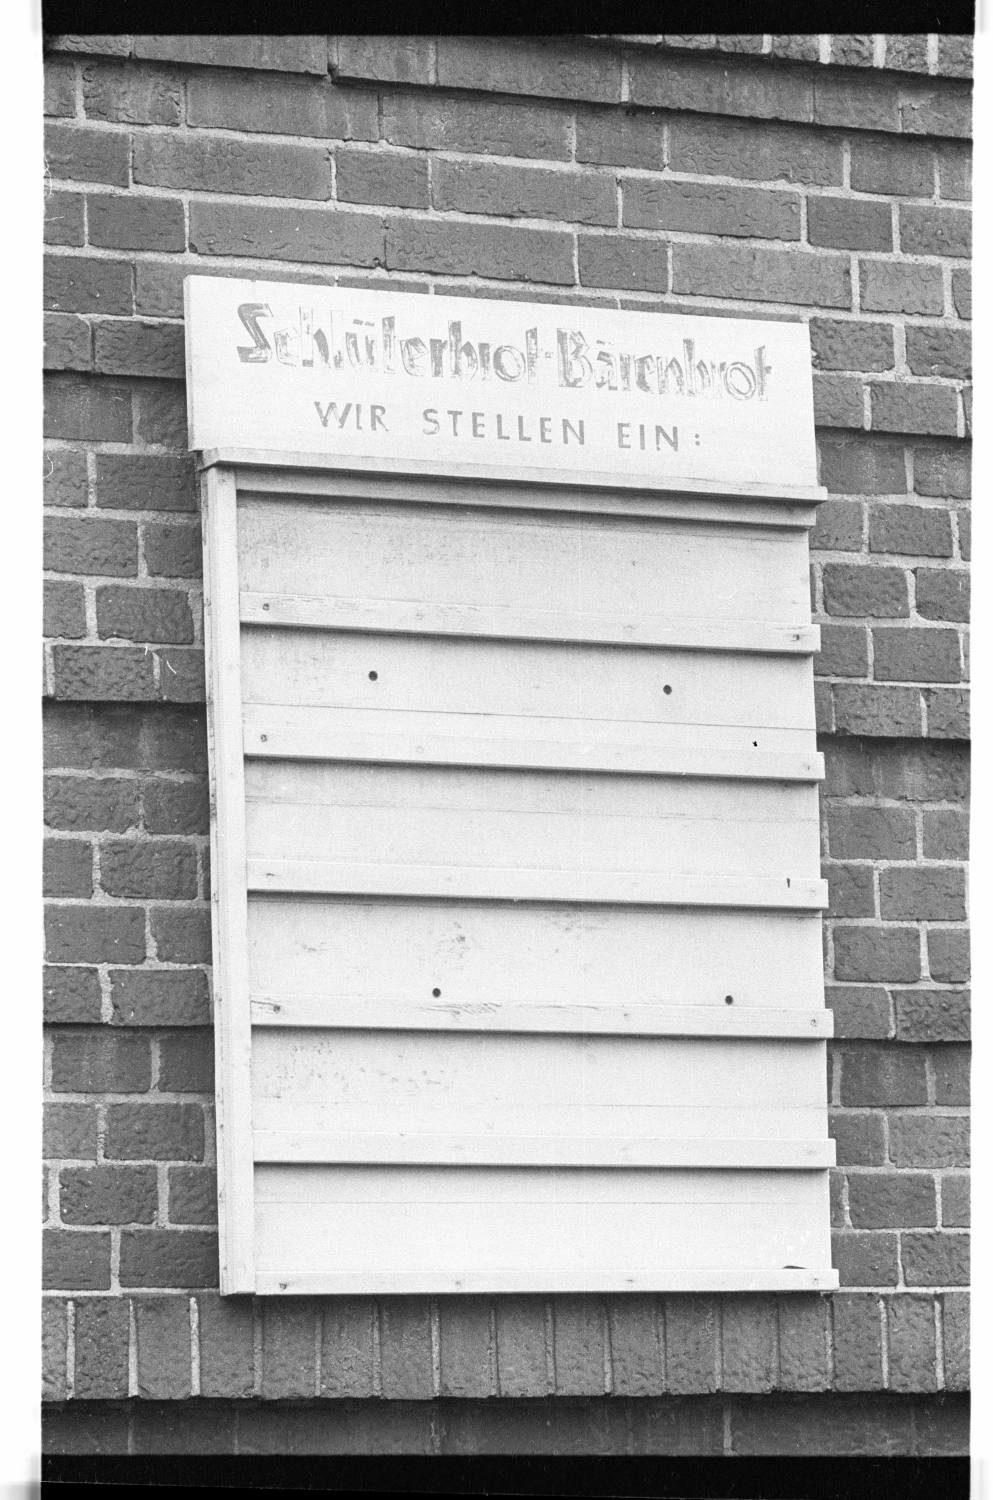 Kleinbildnegative: Schlüterbrot-Bärenbrot Fabrik, 1978 (Museen Tempelhof-Schöneberg/Jürgen Henschel RR-F)